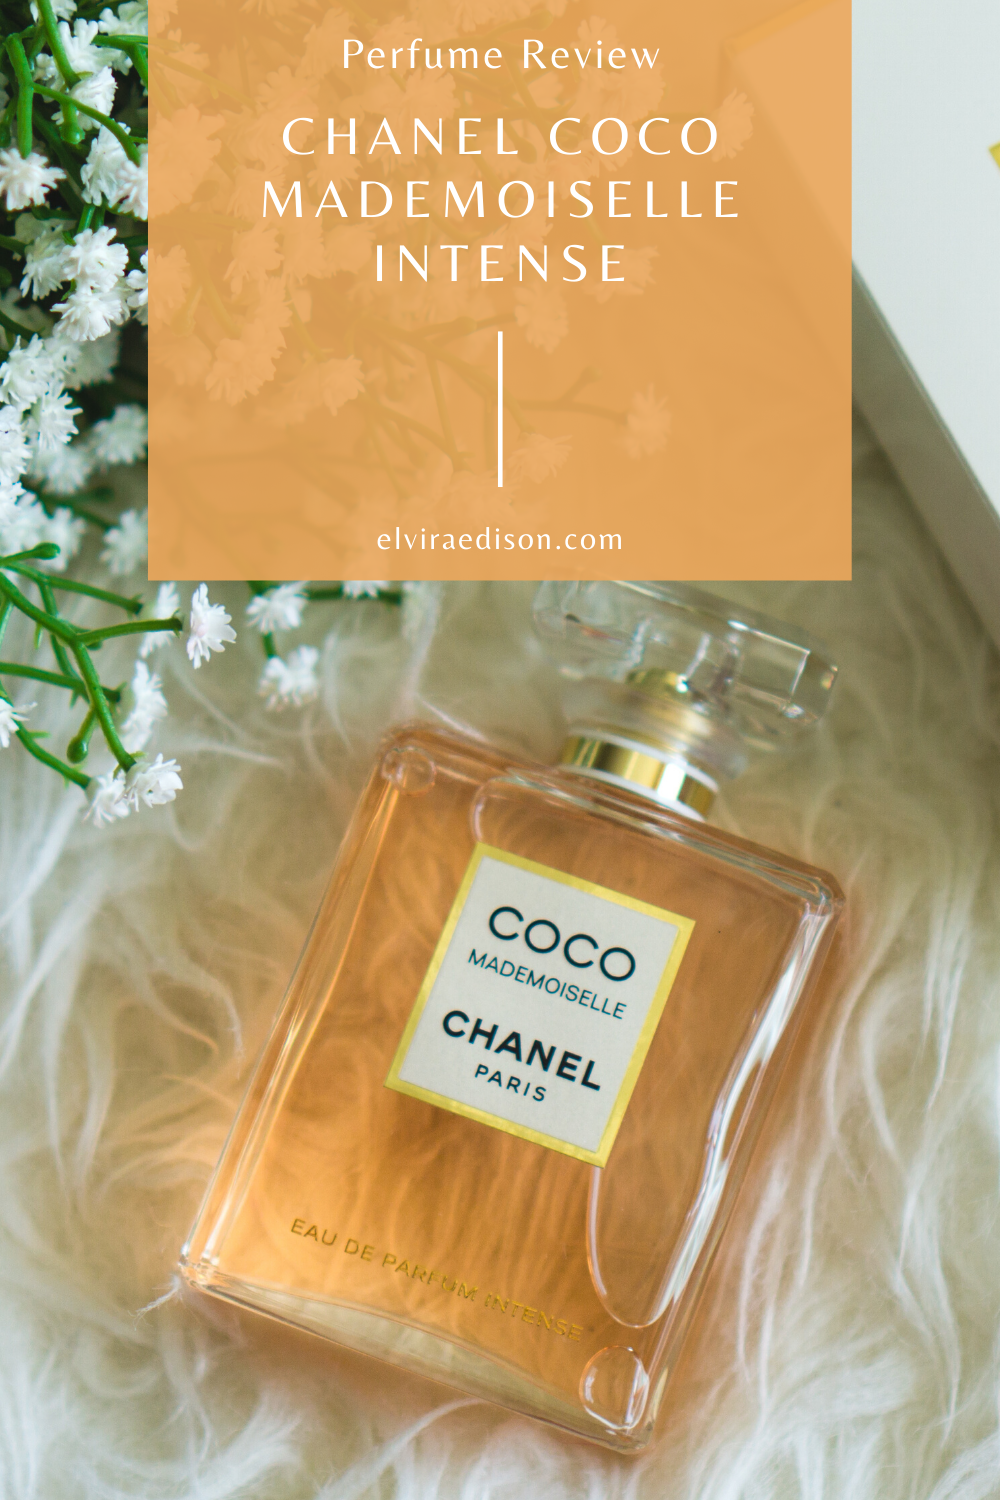 Shop for samples of Coco Mademoiselle Intense (Eau de Parfum) by